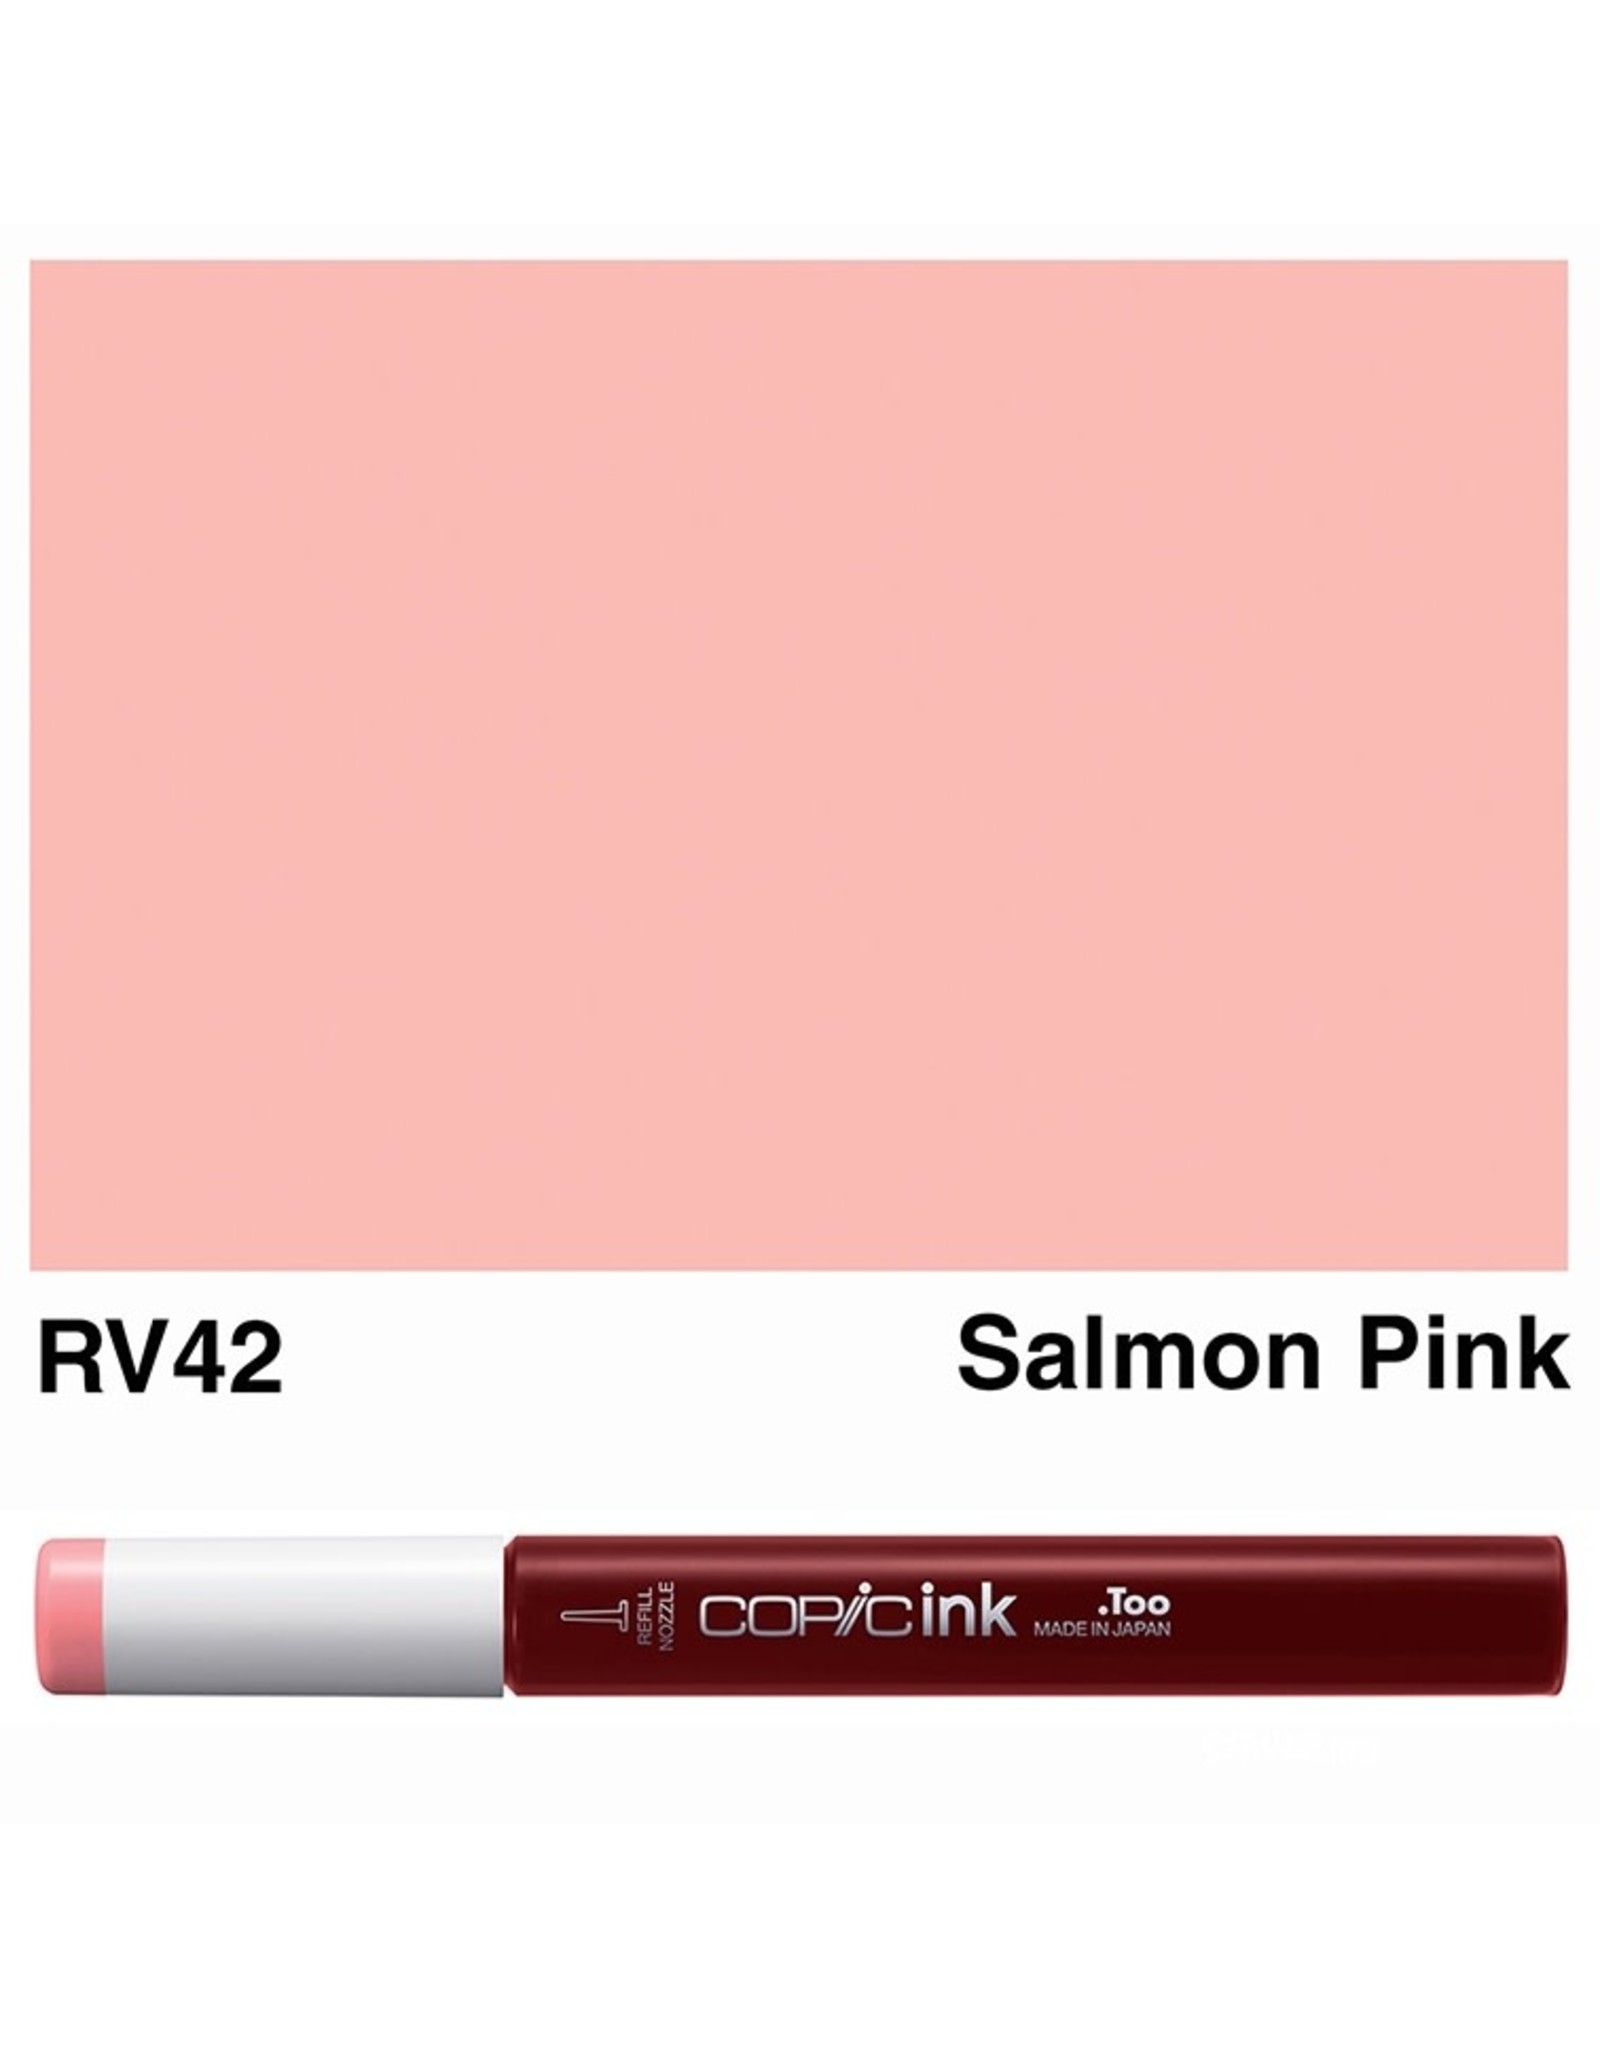 COPIC COPIC RV42 SALMON PINK REFILL